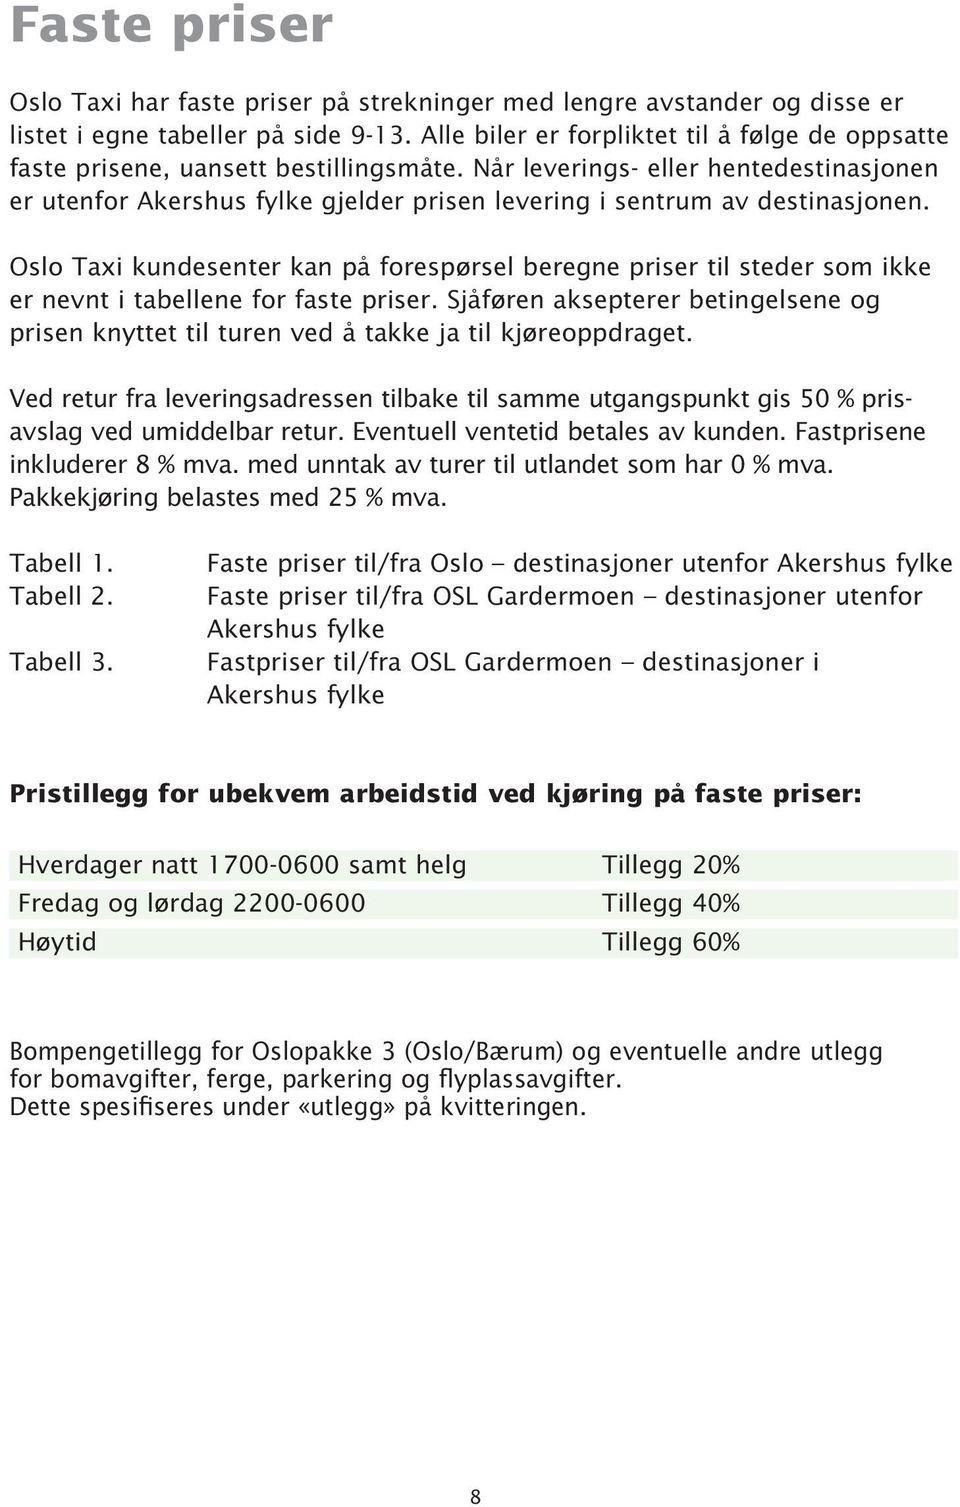 Når leverings- eller hentedestinasjonen er utenfor Akershus fylke gjelder prisen levering i sentrum av destinasjonen.